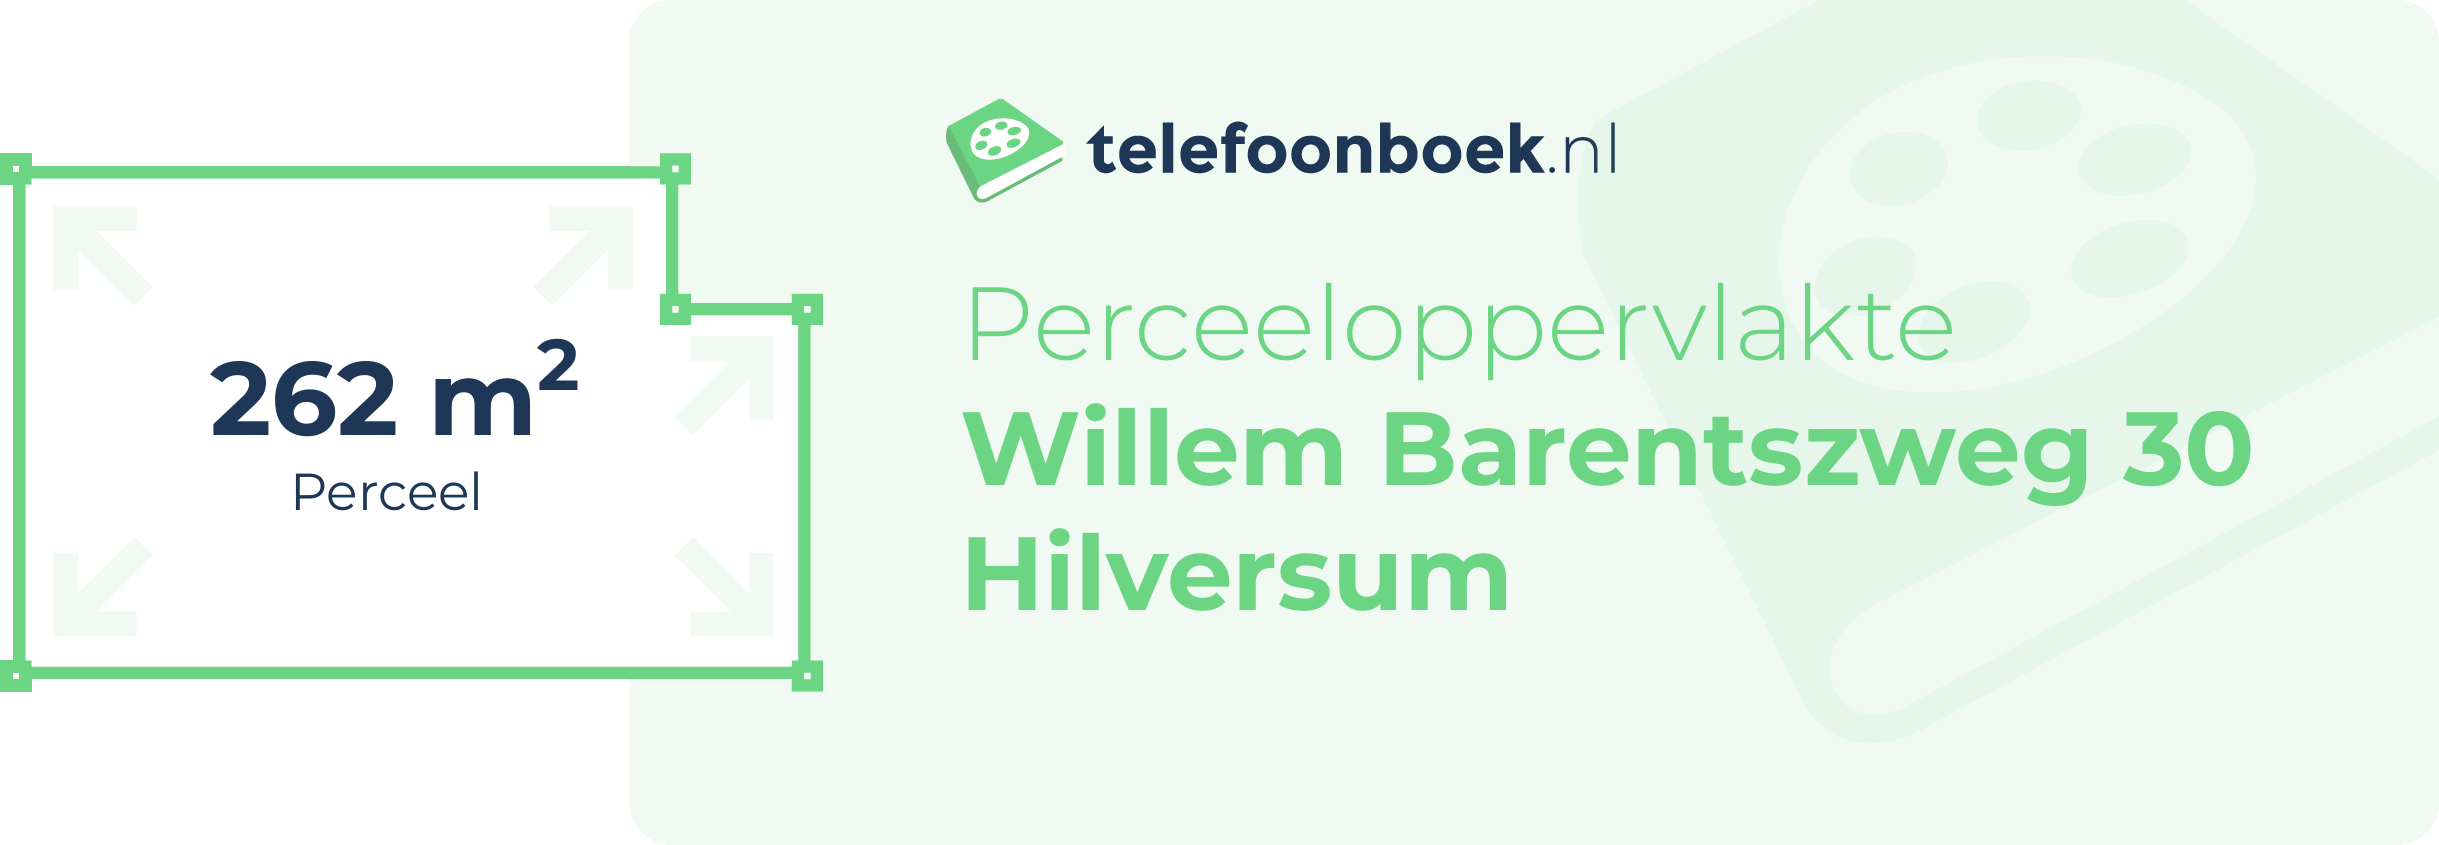 Perceeloppervlakte Willem Barentszweg 30 Hilversum